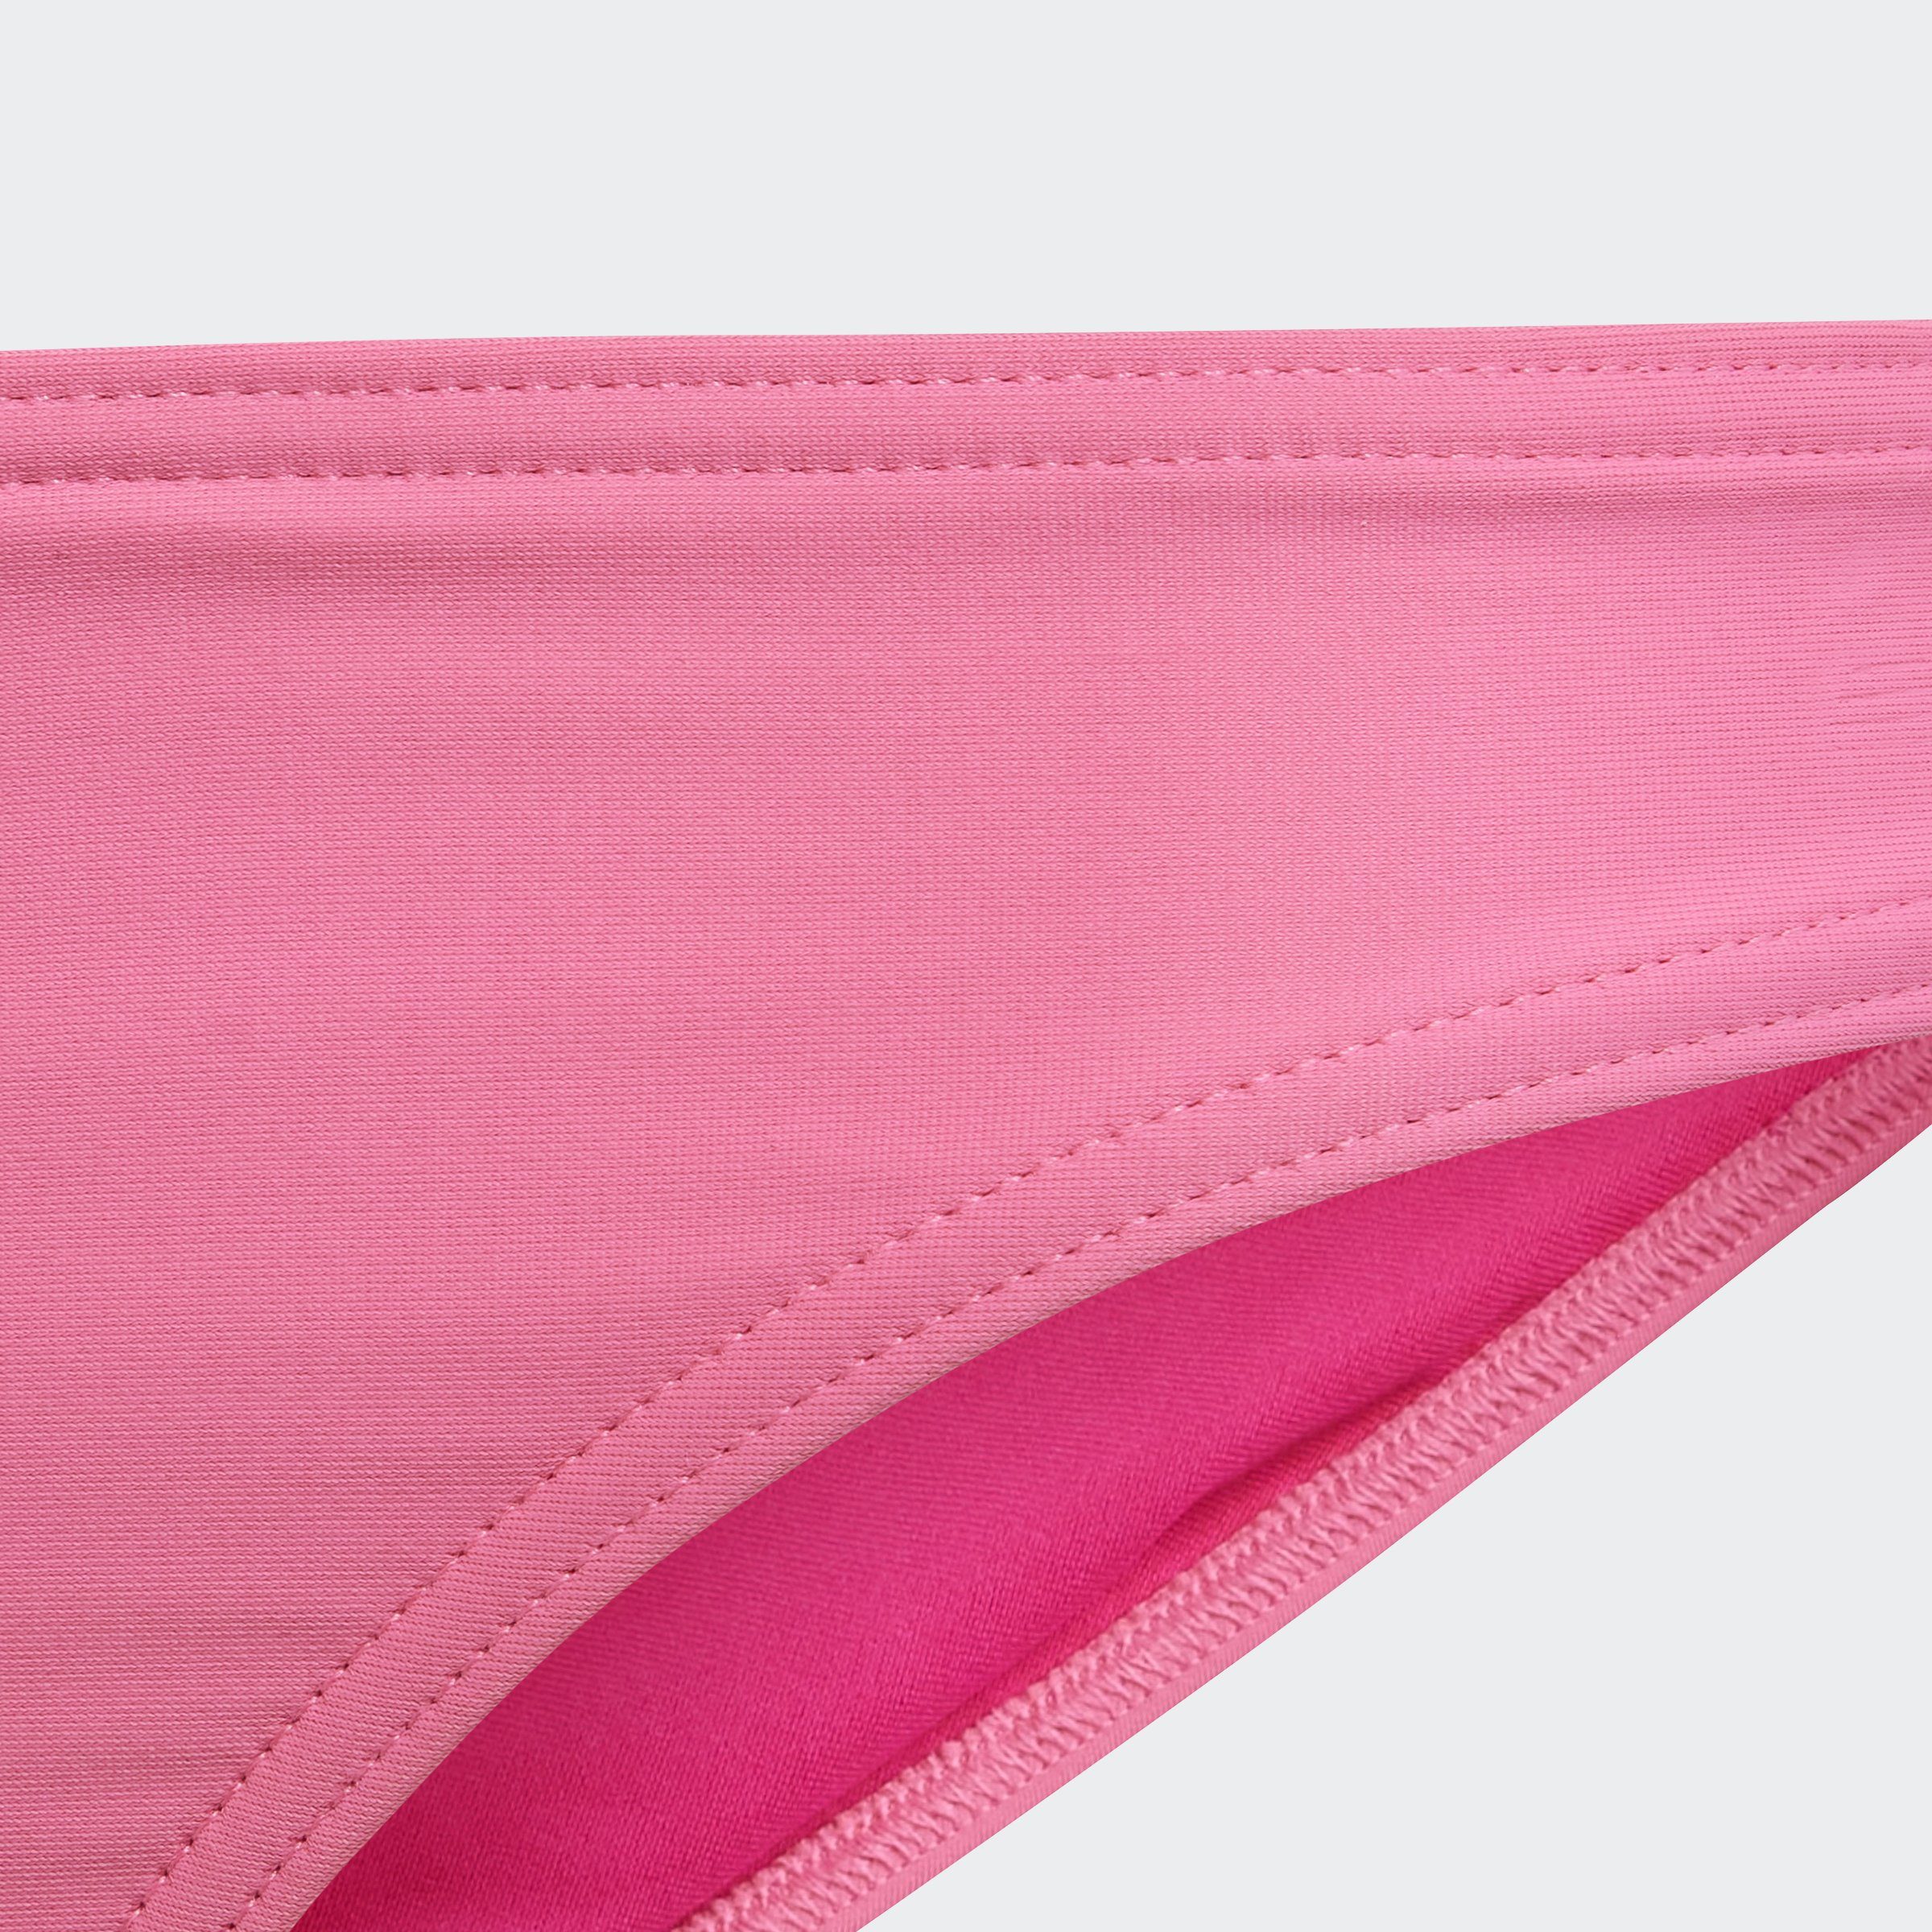 adidas Bustier-Bikini Performance Fusion 3STREIFEN / BIKINI Pink White